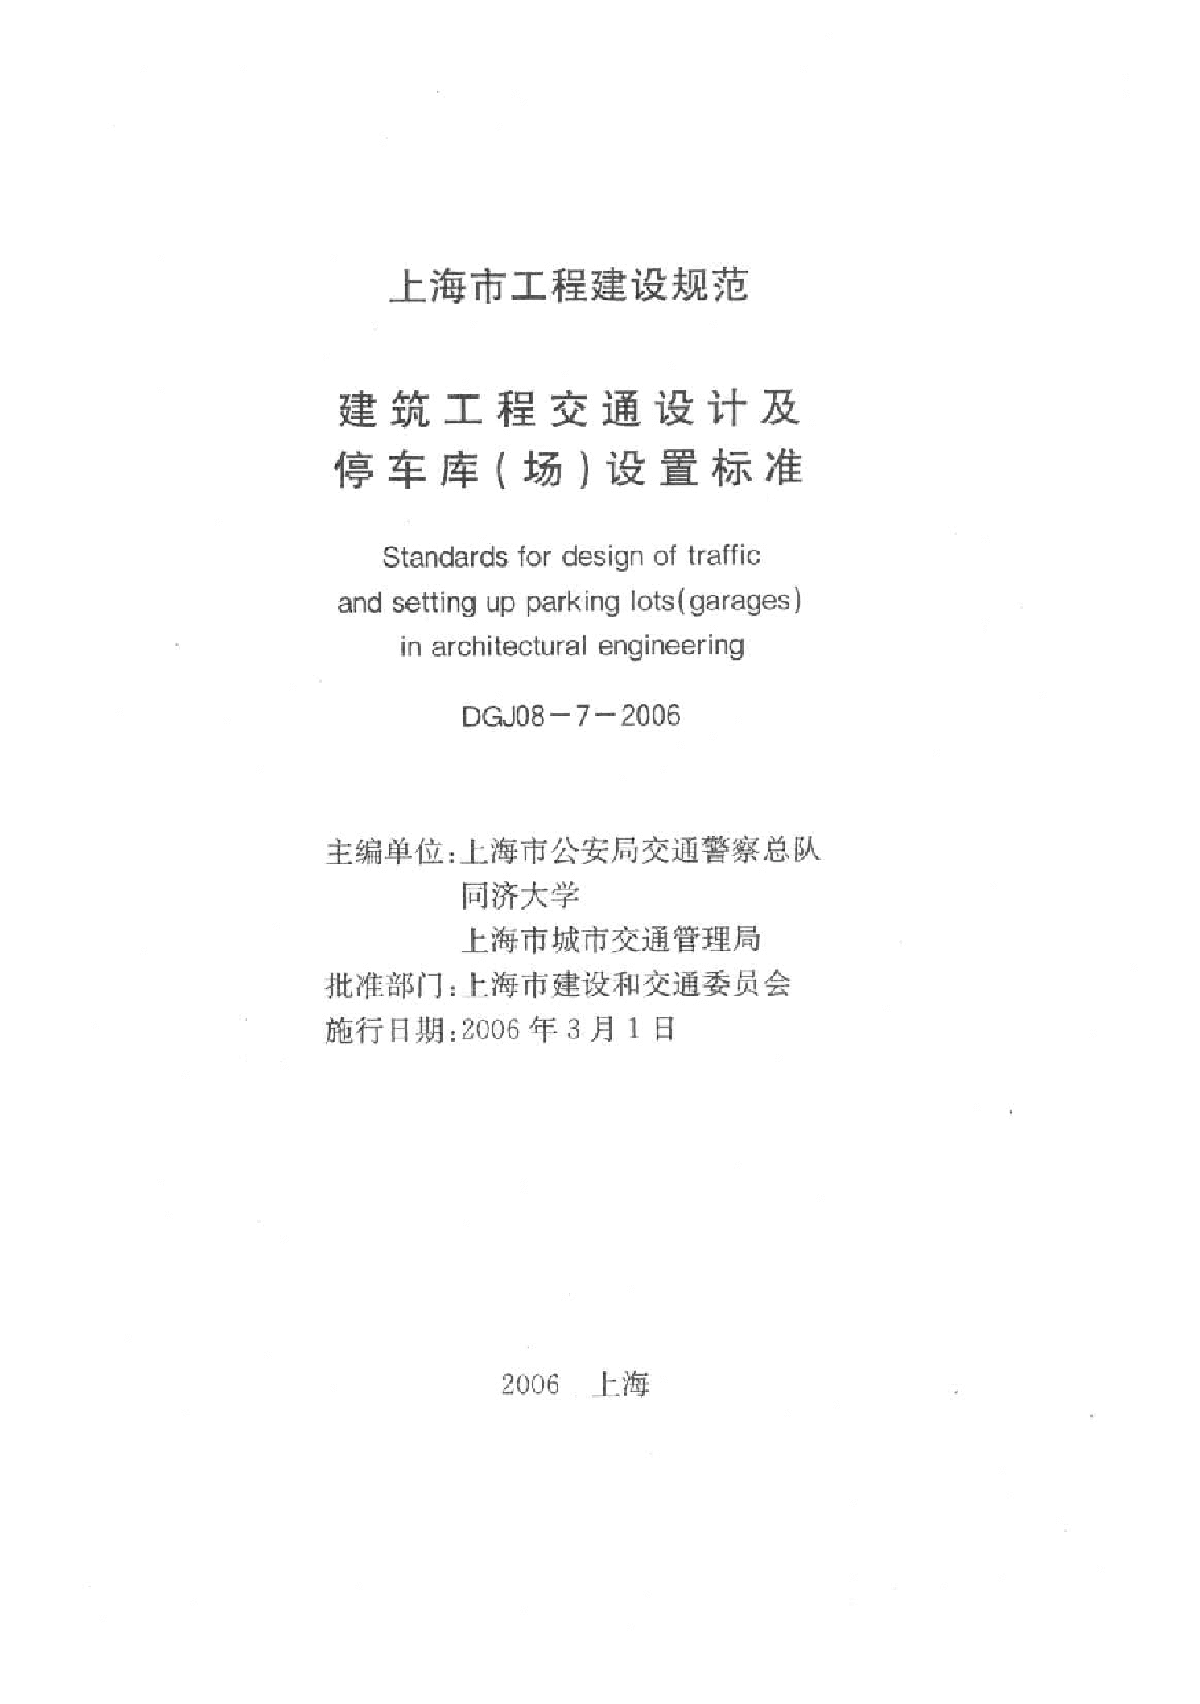 上海市 建筑工程交通设计及停车库(场)设置标准 DGJ08-7-2006.pdf-图一